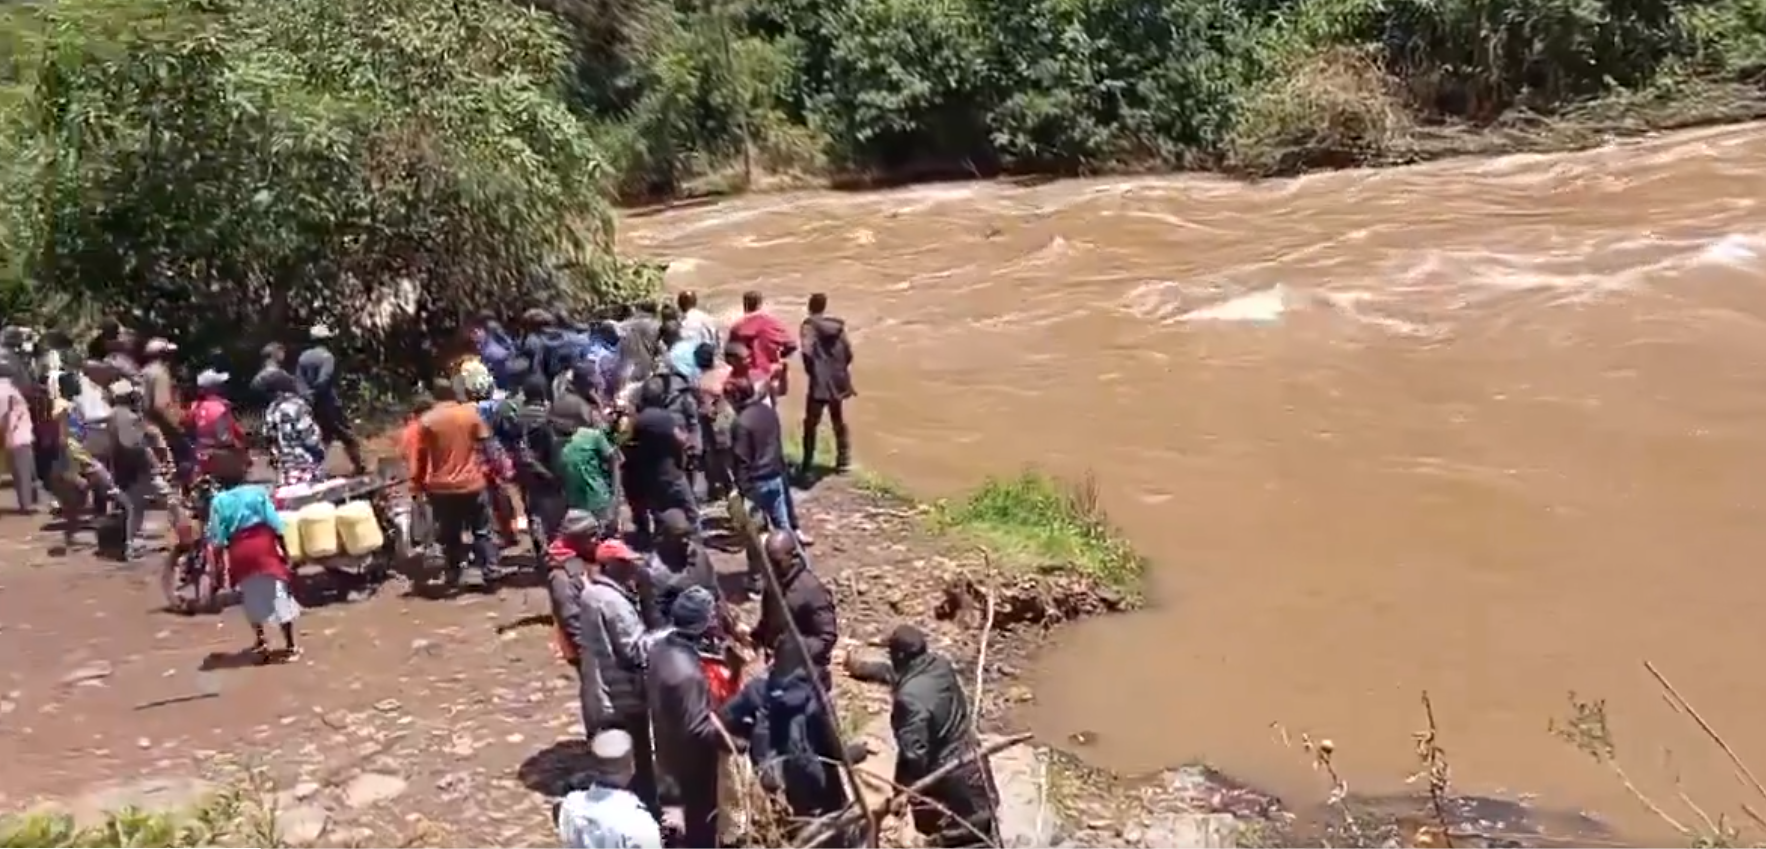 A screengrab image of Bomet locals at a river.